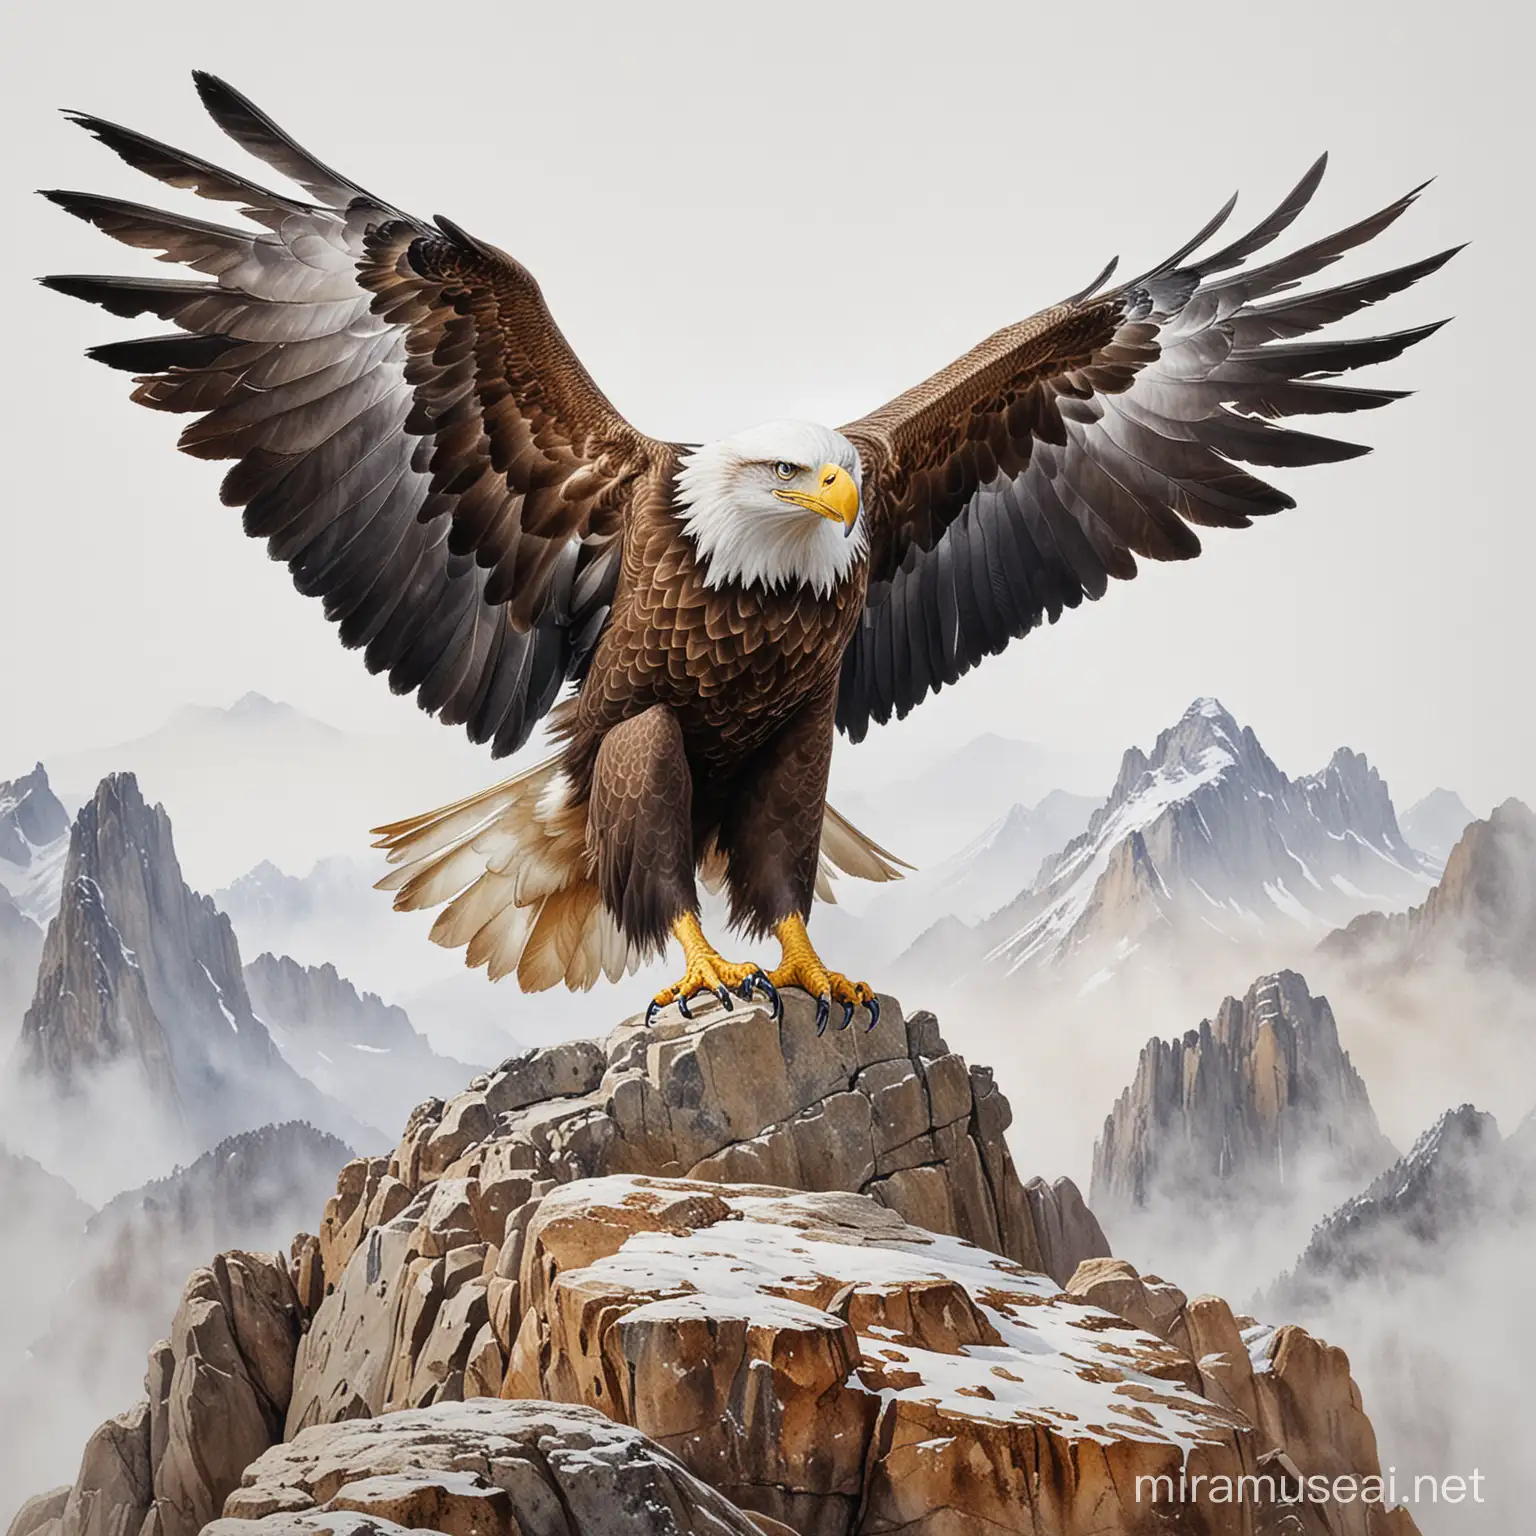 To zdjęcie przedstawia wspaniałego orła siedzącego na skale z rozpostartymi skrzydłami przed nim. Obrazek ukazuje piękno i potęgę tego ptaka, który ma symboliczne znaczenie w wielu kulturach. obraz niedokończony malowany akwarelą, białe tło